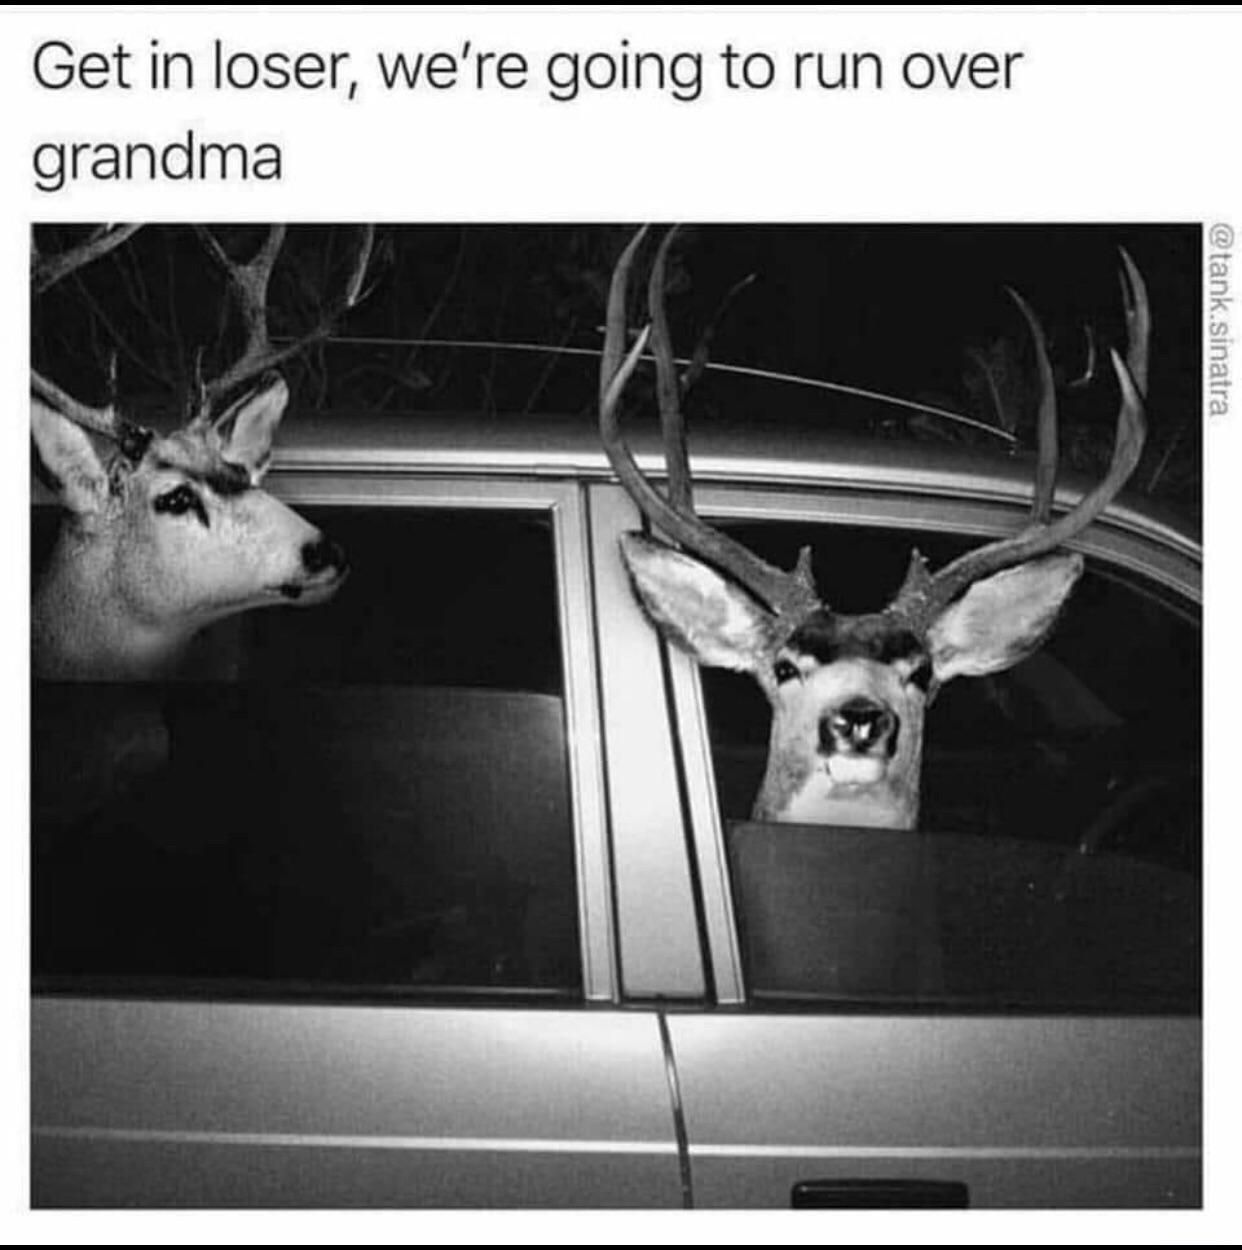 Oh deer!!